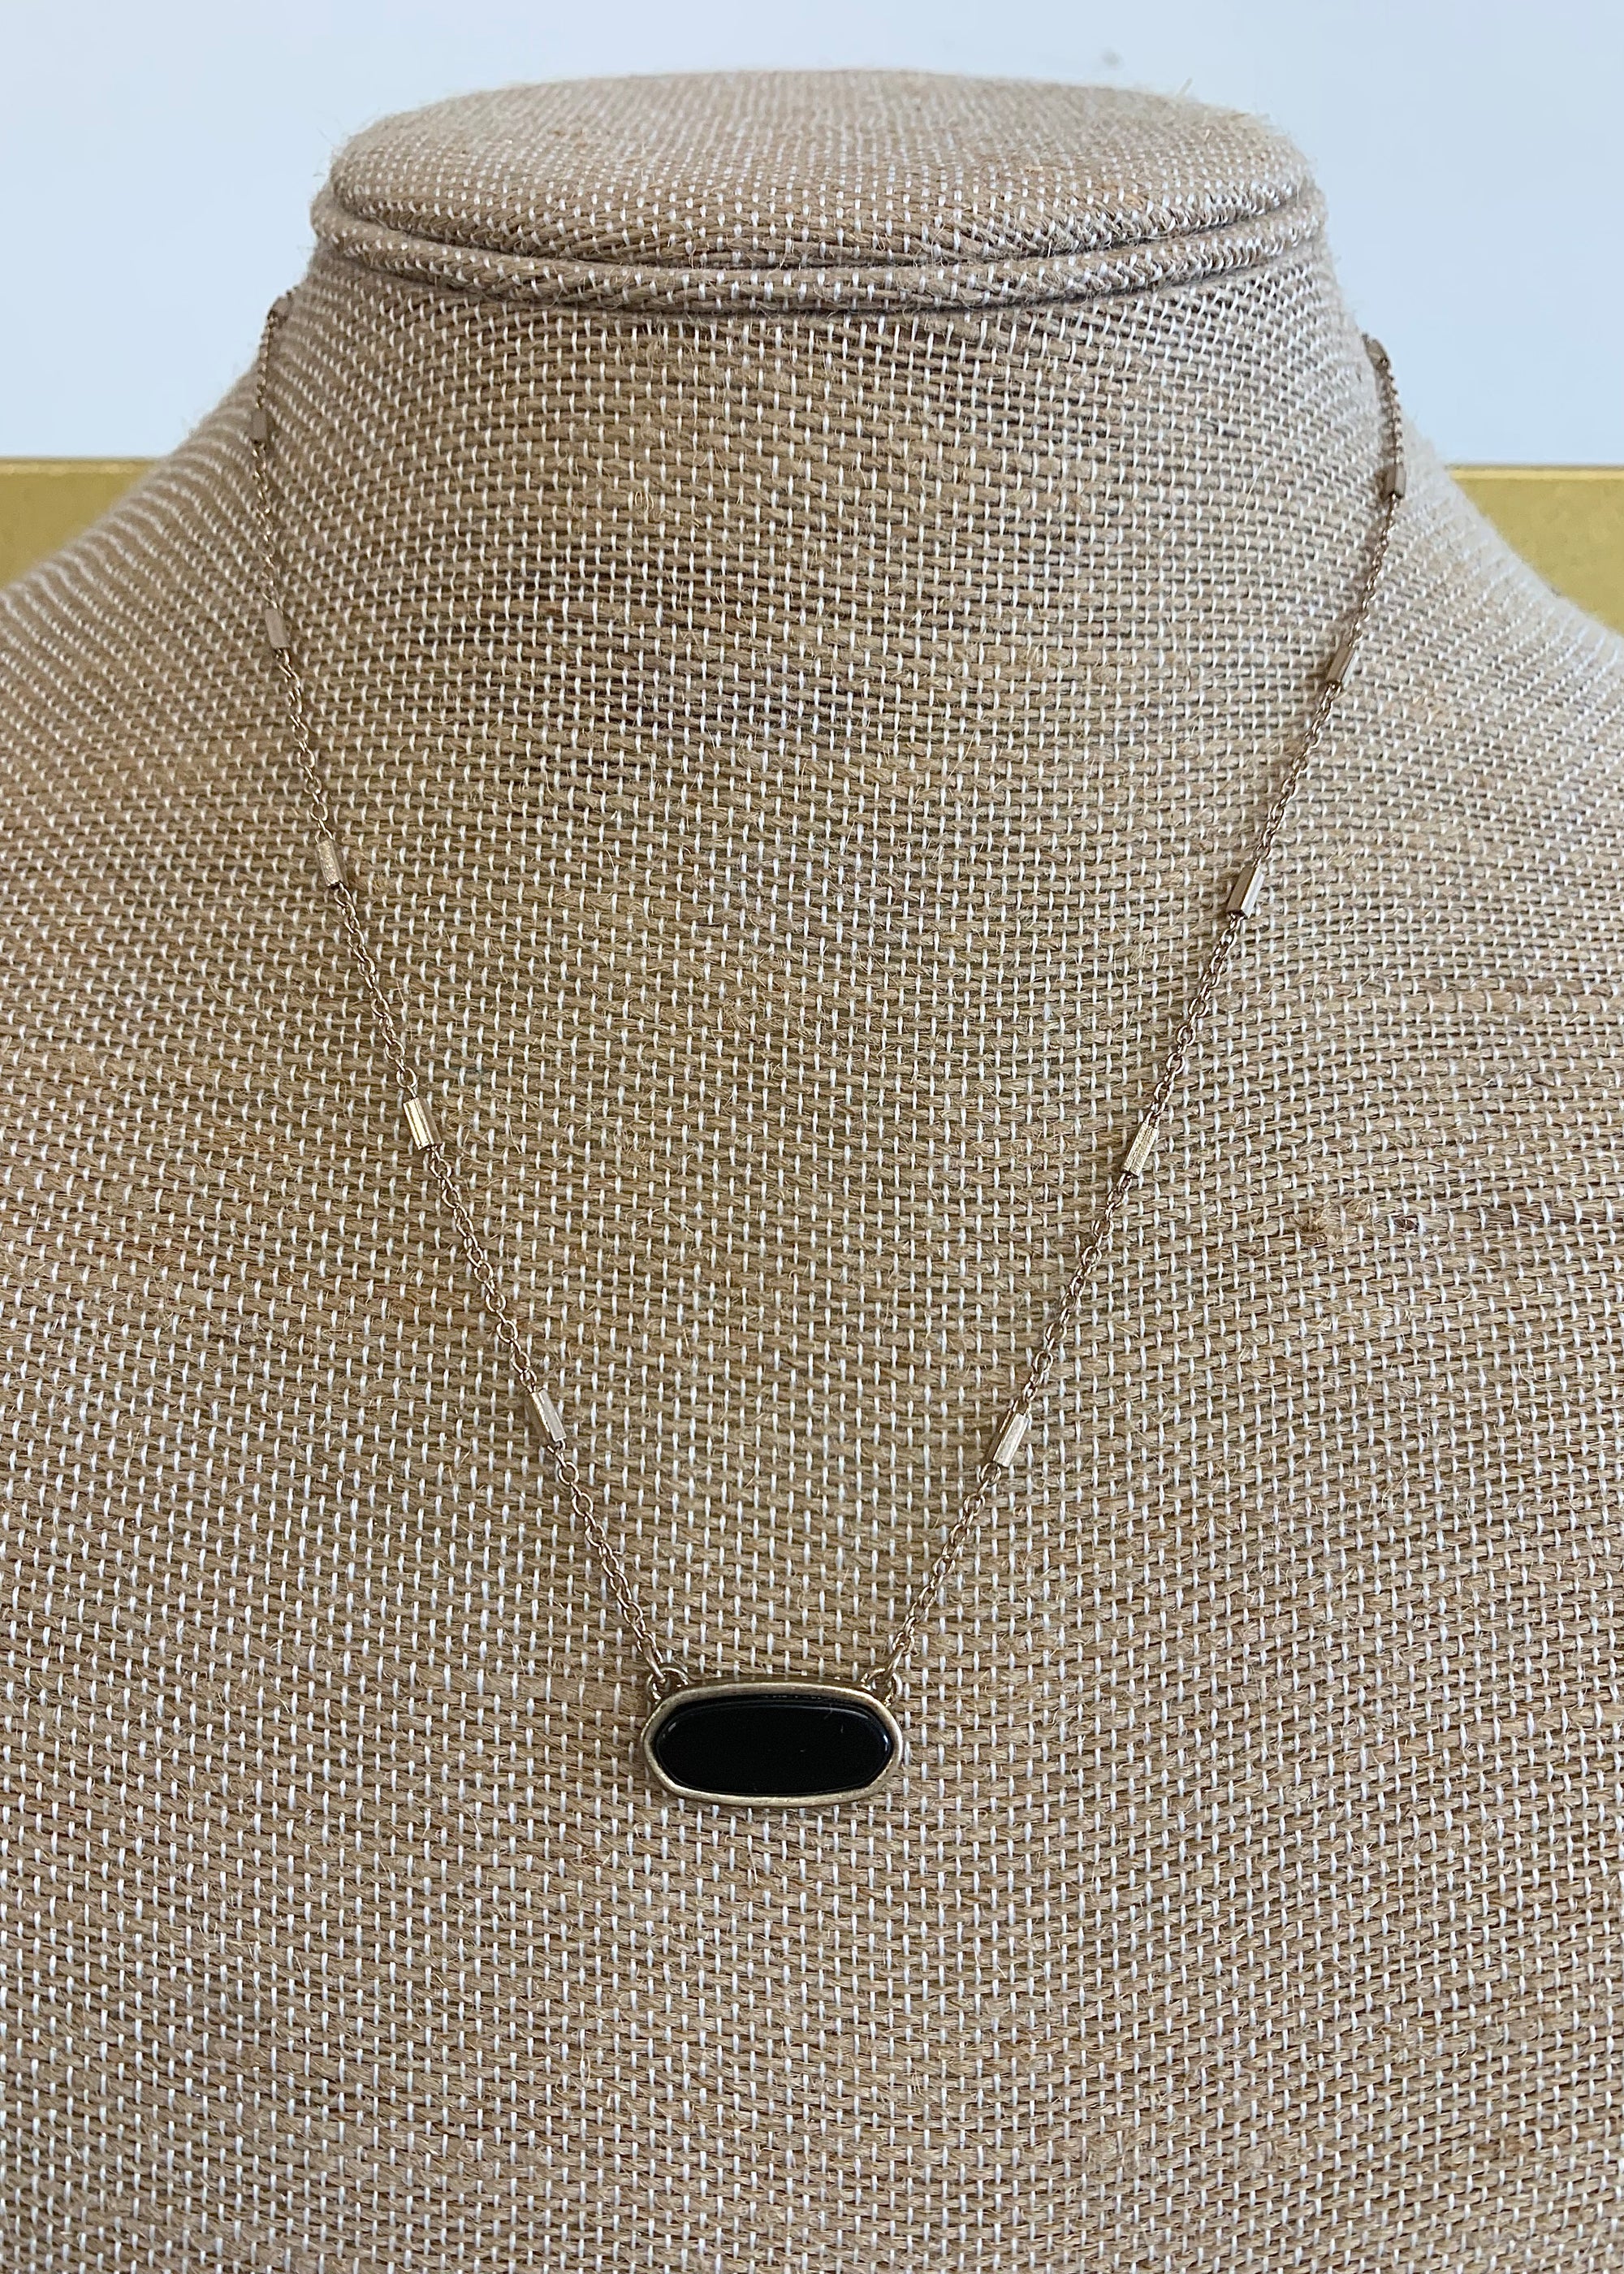 Black Pendant Necklace - B3 Boutique, LLC